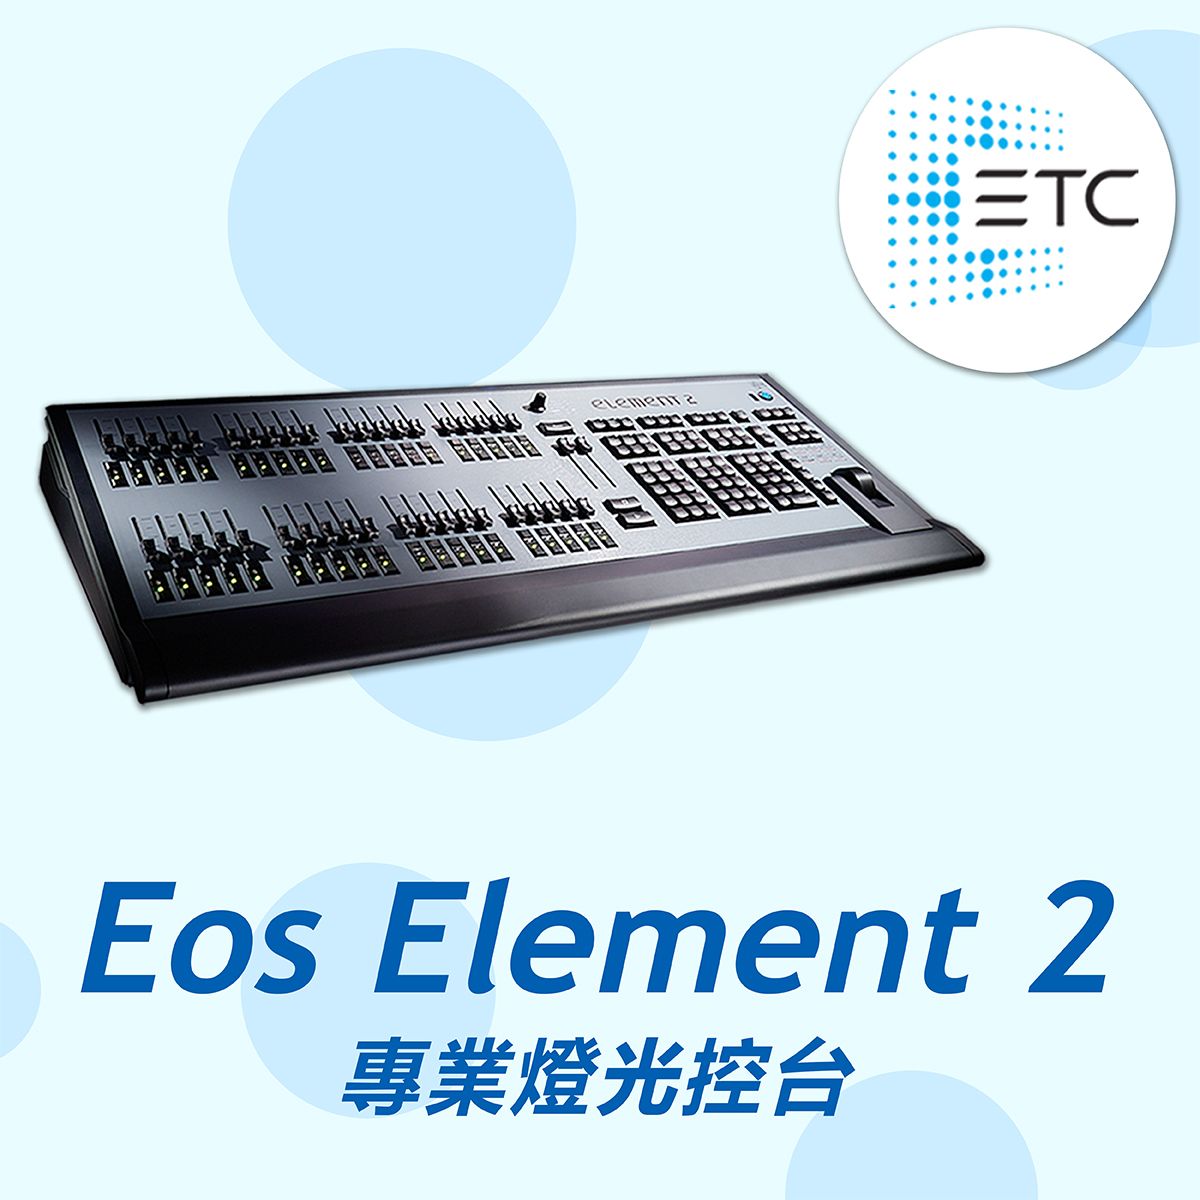 ETC Eos Element 2